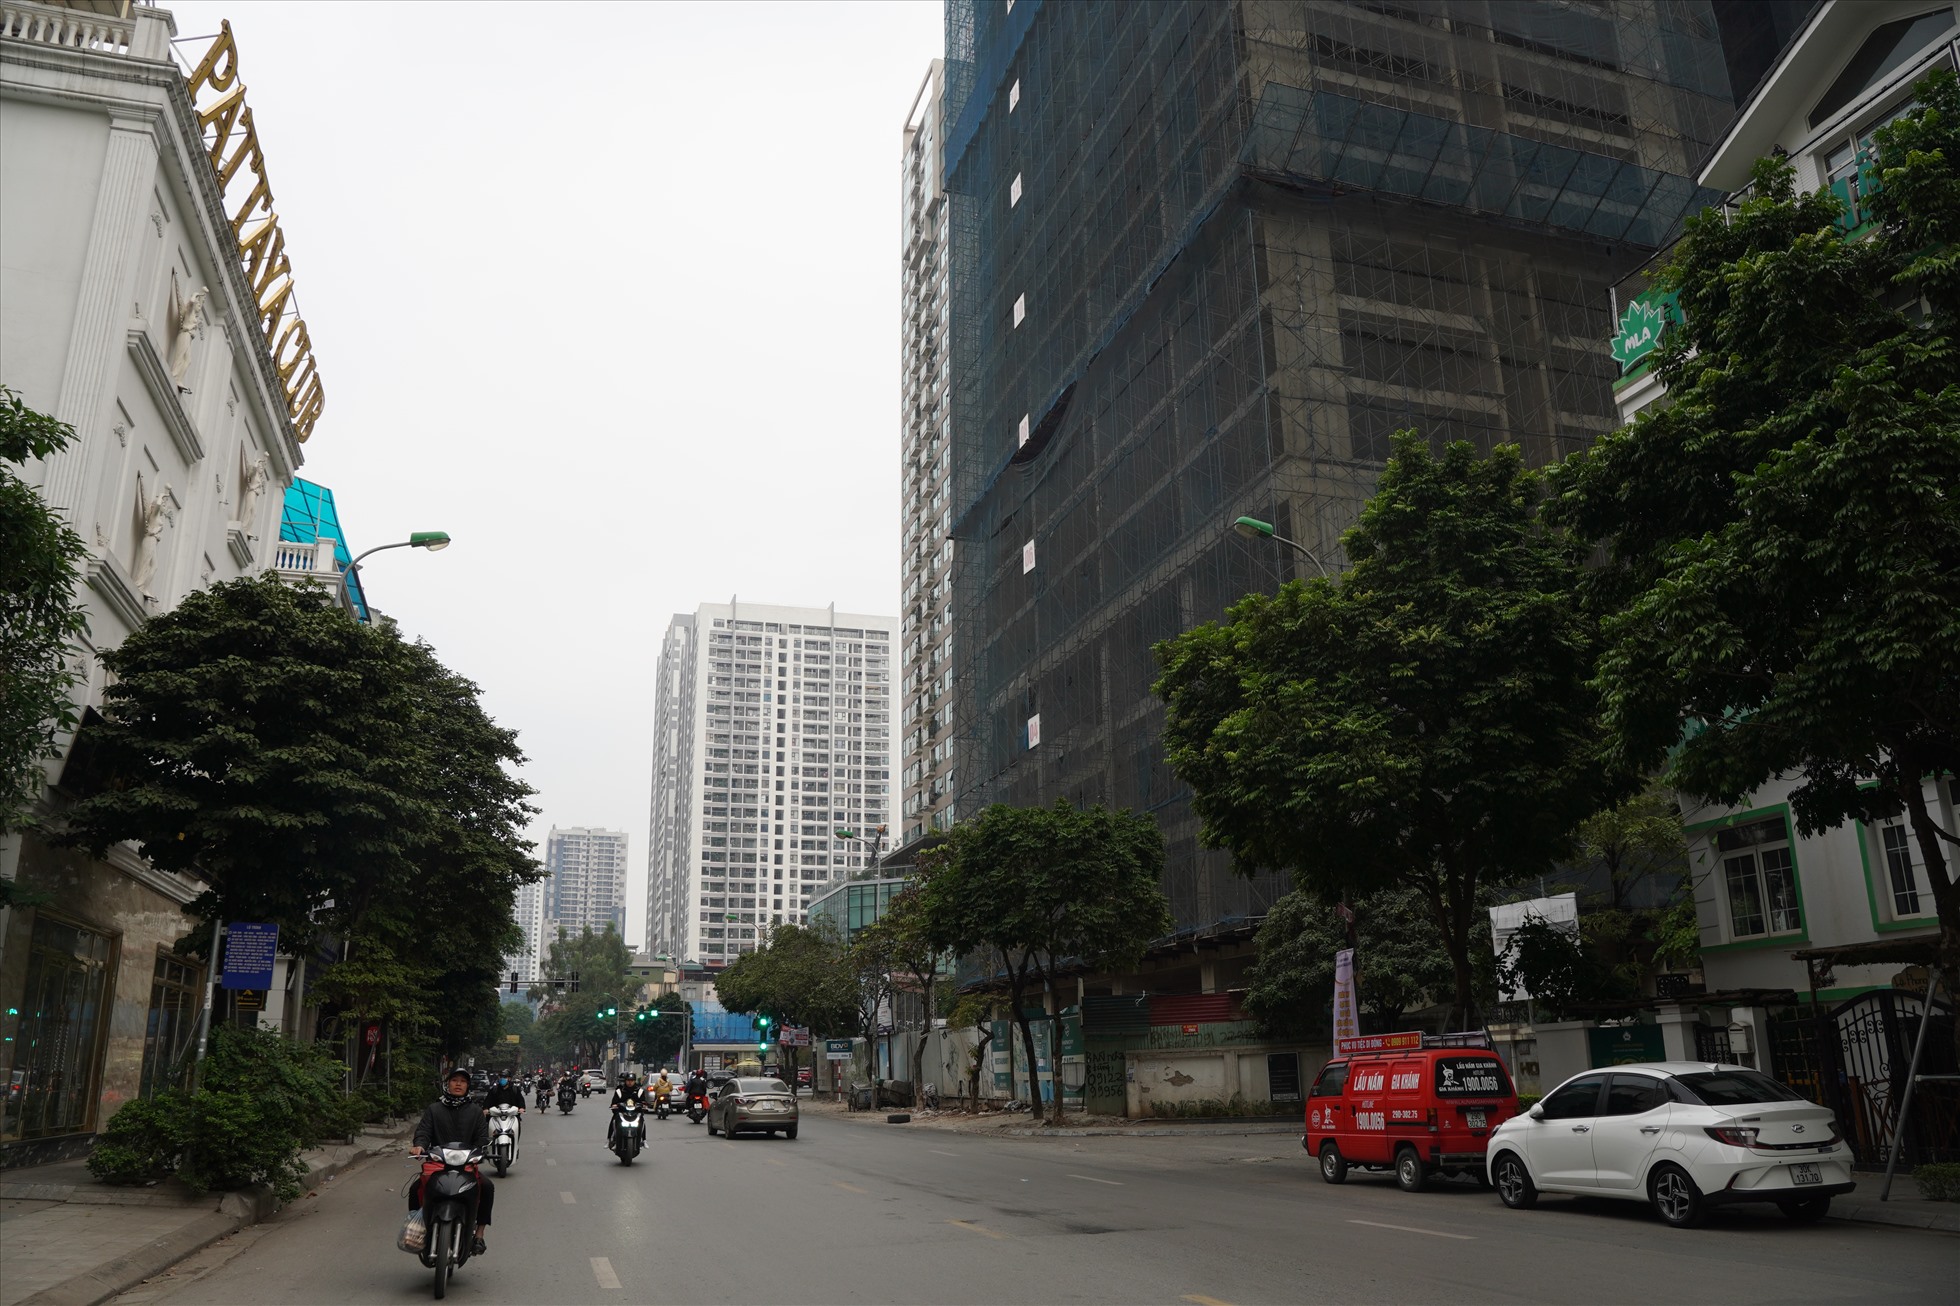 Tuyến đường Nguyễn Tuân đã có đến 3 dự án cao ốc “mọc” trên đất công nghiệp sau di dời nhà máy. Ảnh: Hữu Chánh